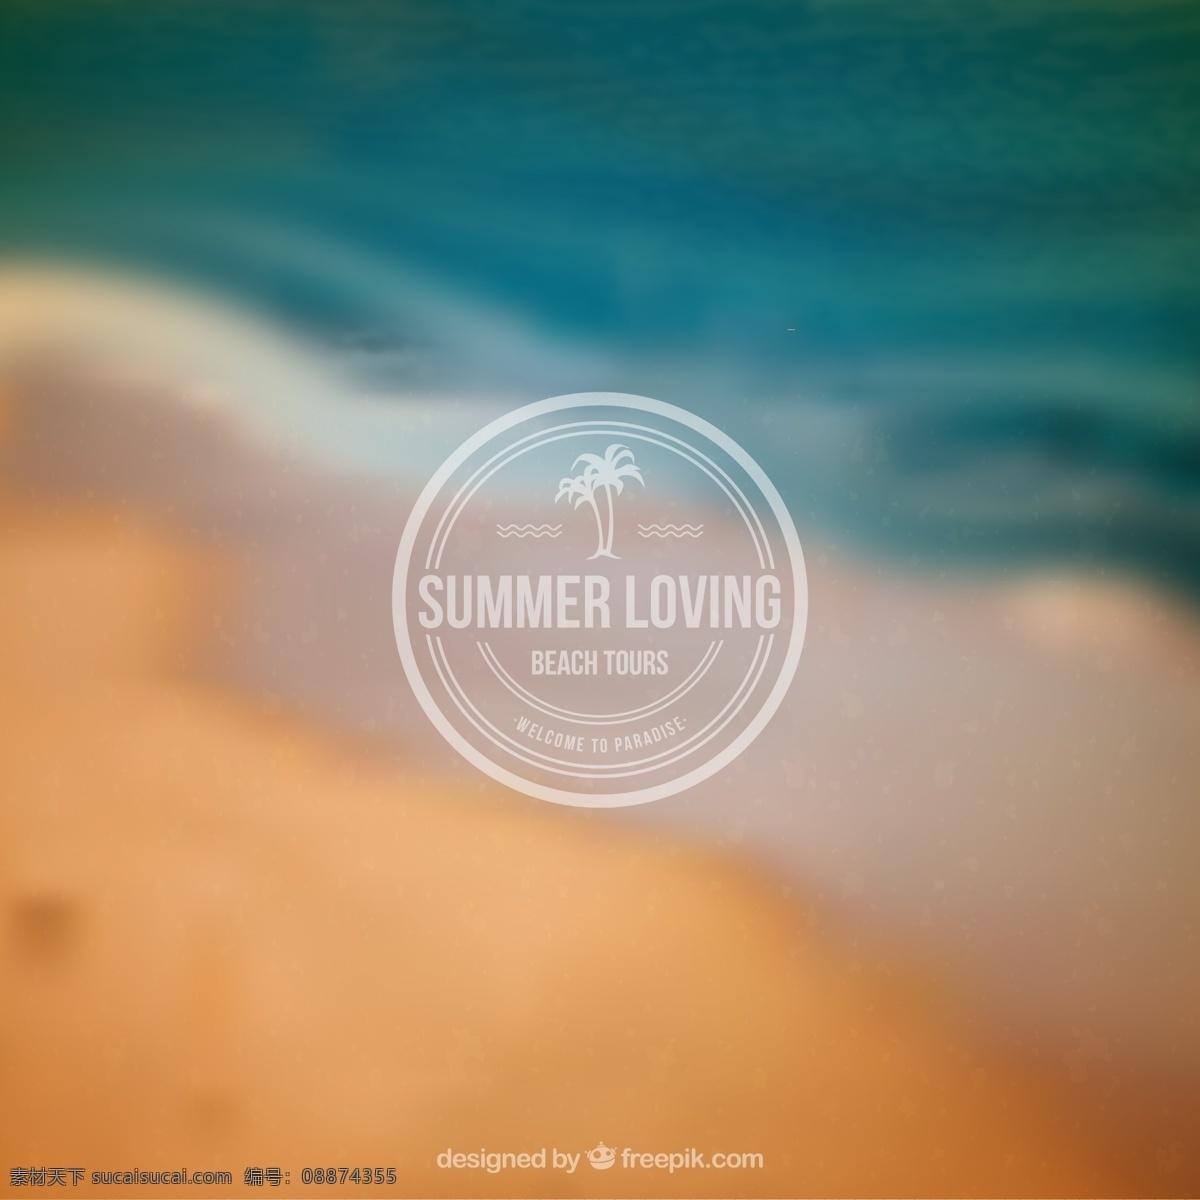 模糊 海岸 风景 夏季 海报 海岸风景 夏季海岸 沙滩 大海 椰子树 summer 夏季旅行 朦胧背景 矢量素材 青色 天蓝色